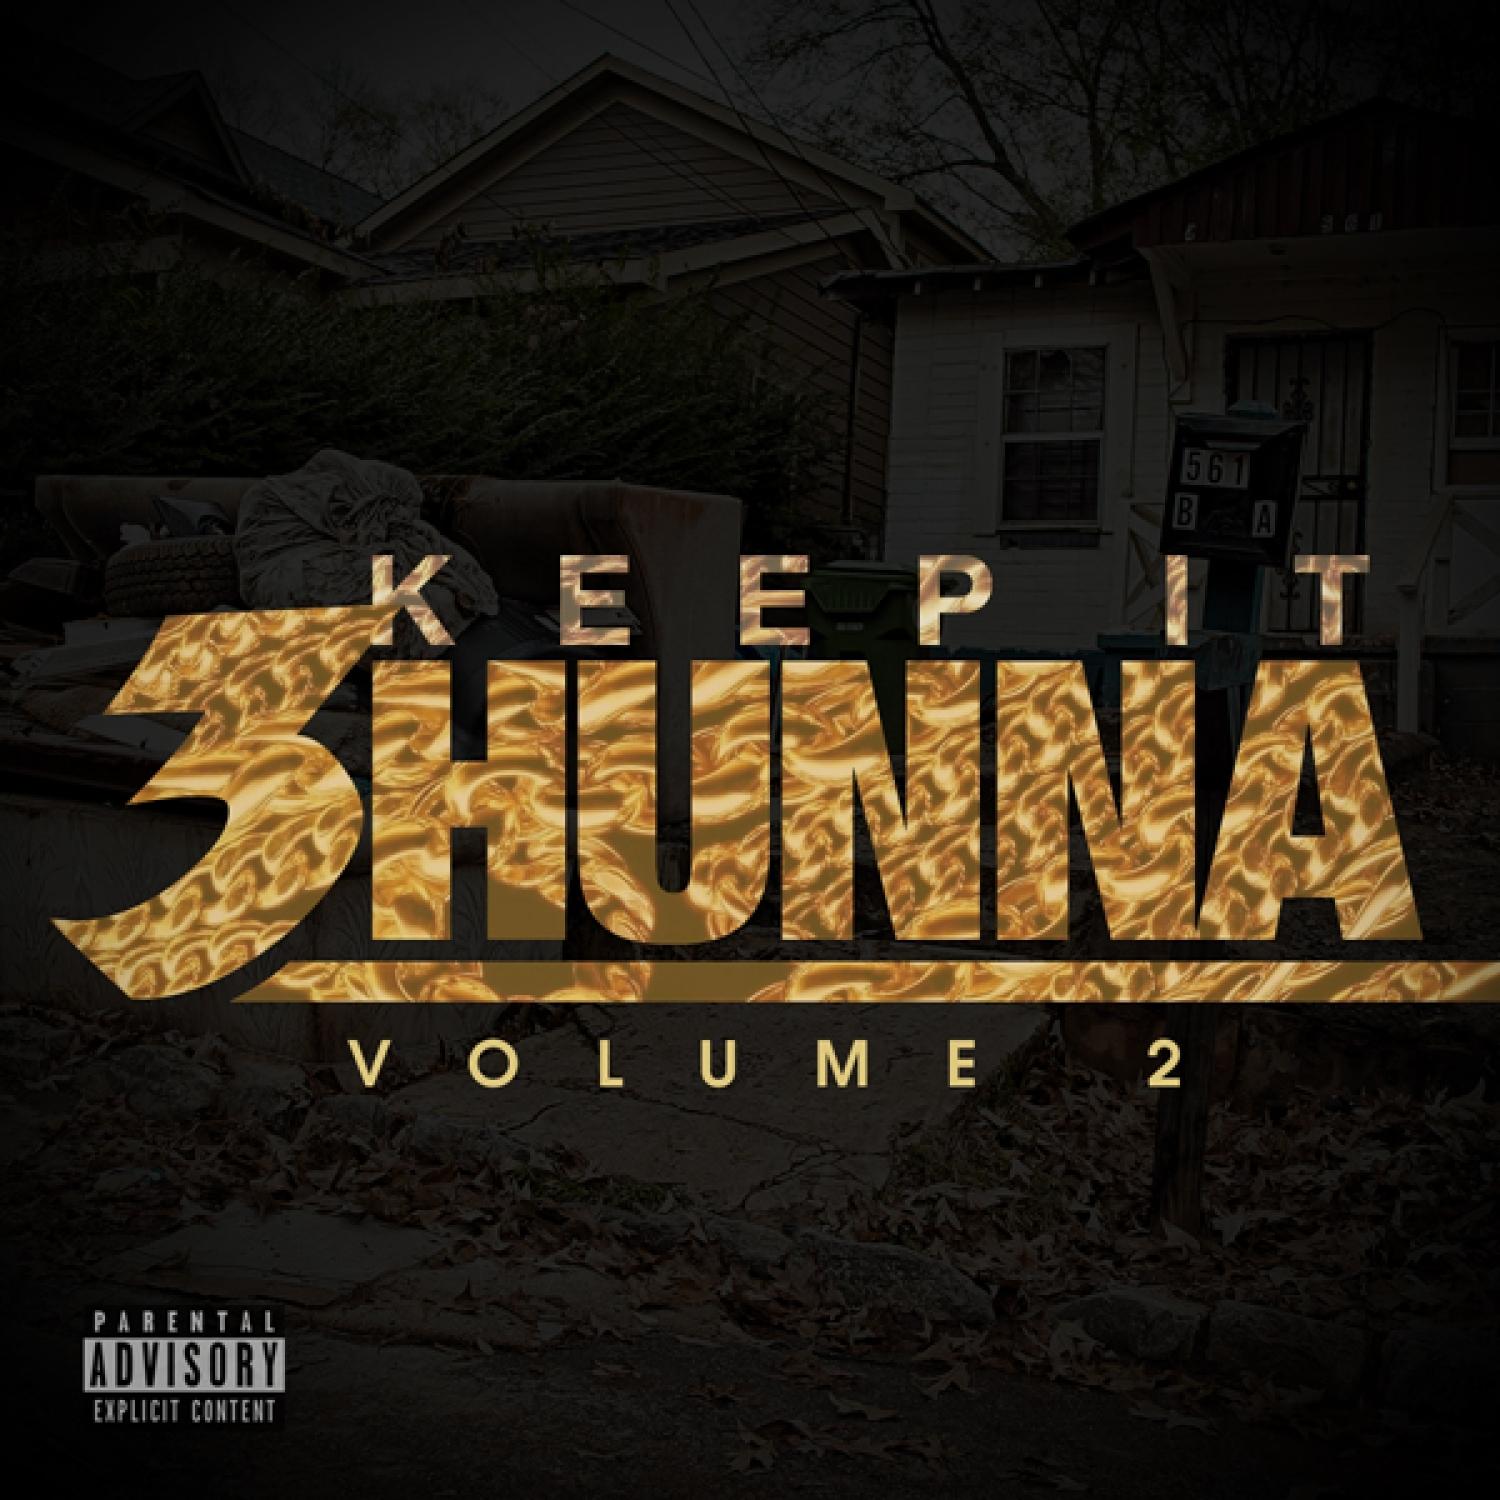 Keep It 3hunna Vol 2